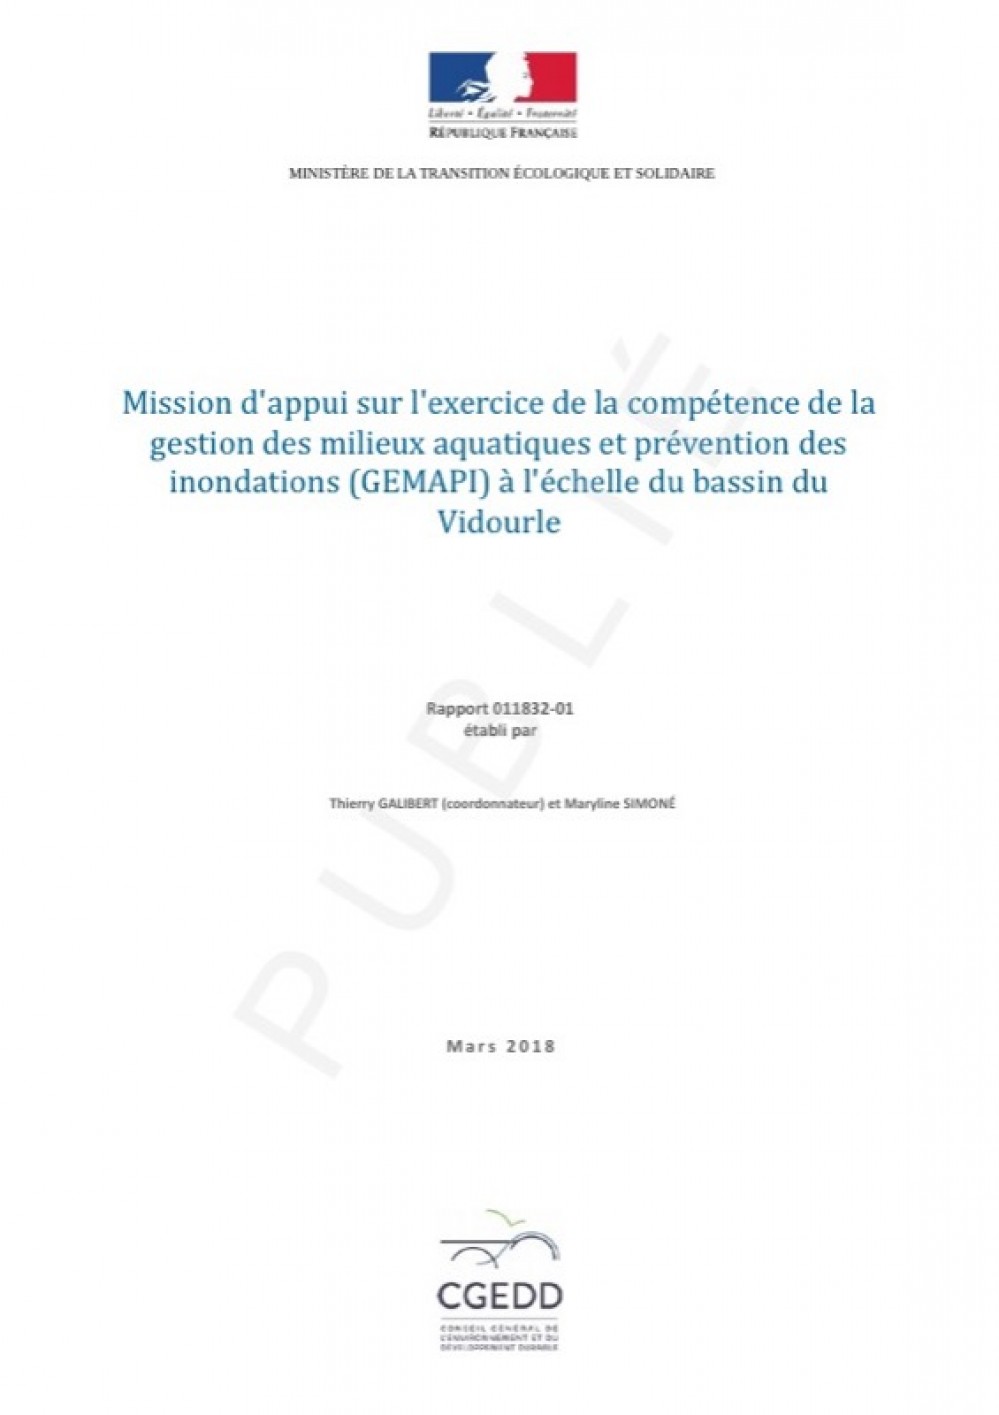 [Publication] Mission d'appui sur l'exercice de la compétence de la gestion des milieux aquatiques et prévention des inondations (GEMAPI) à l'échelle du bassin du Vidourle - CGEDD